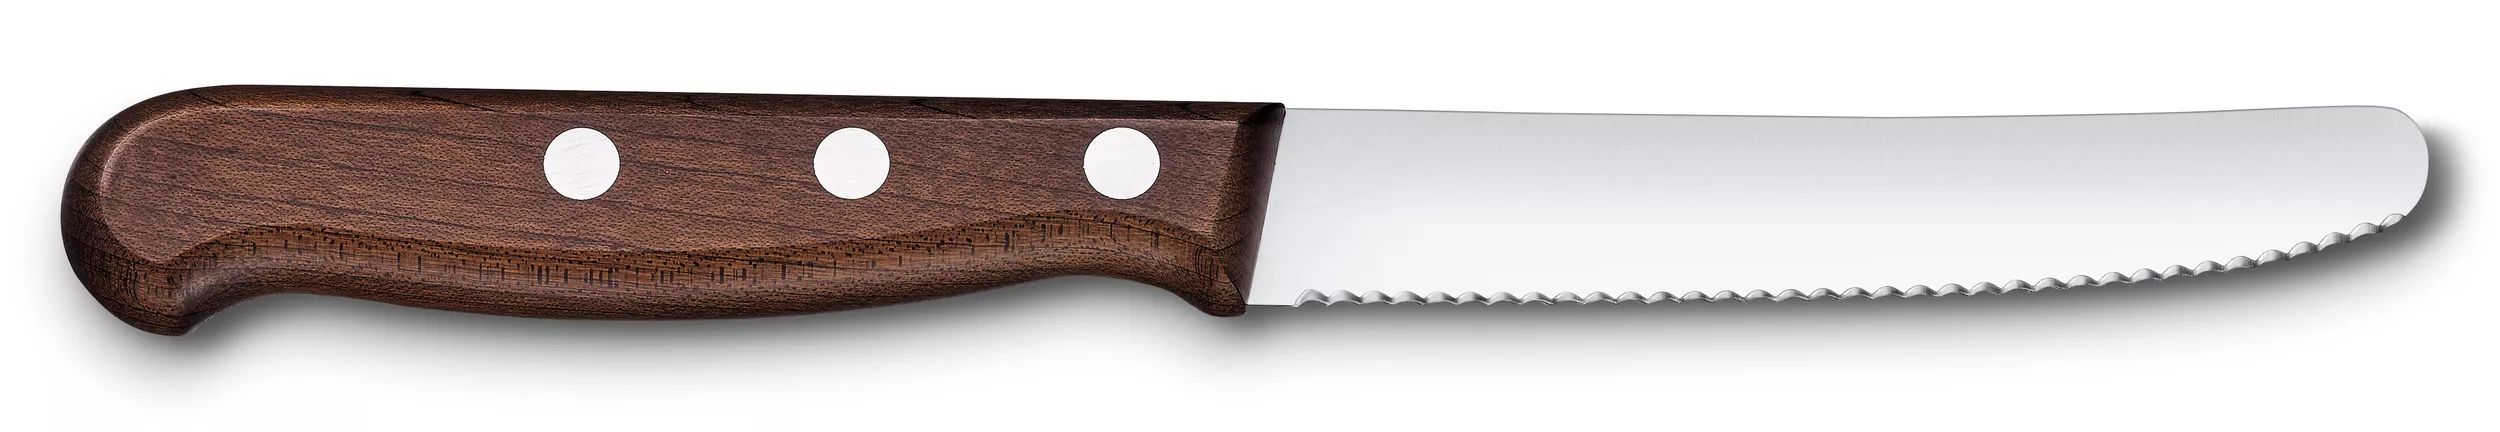 Cuchillo para tomate y de mesa Wood - 5.0830.11G